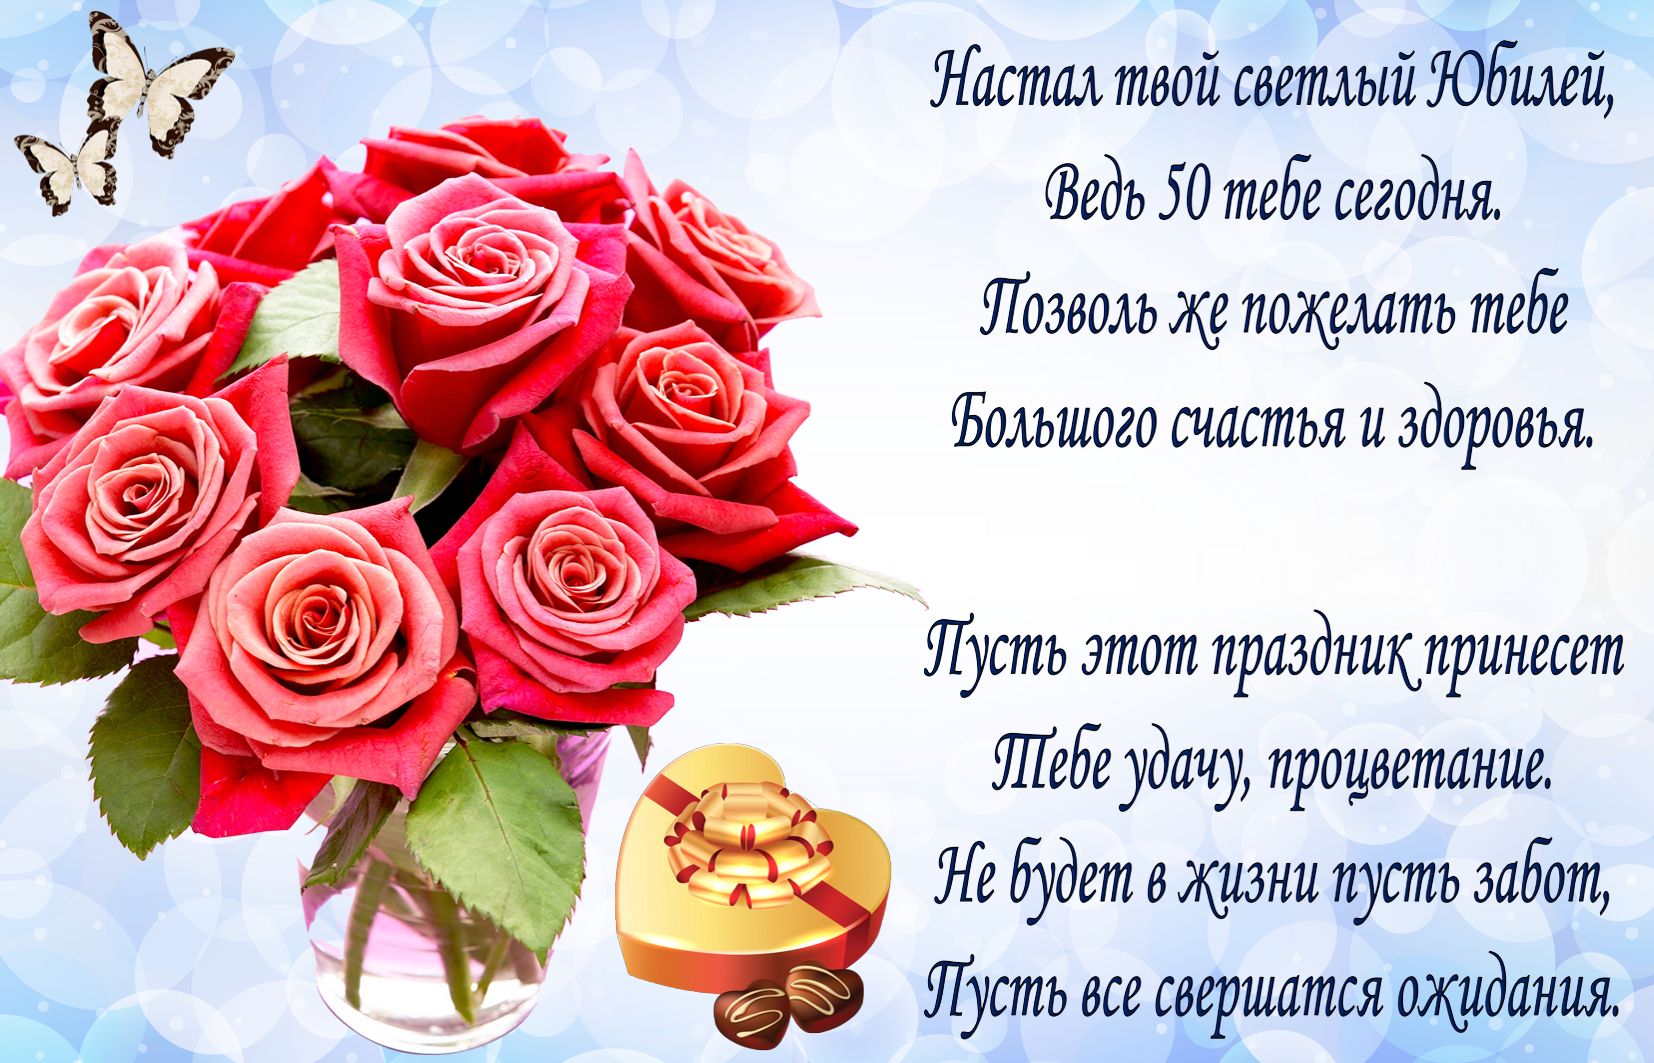 Открытка на юбилей 50 лет - пожелание и букет красных роз в вазе